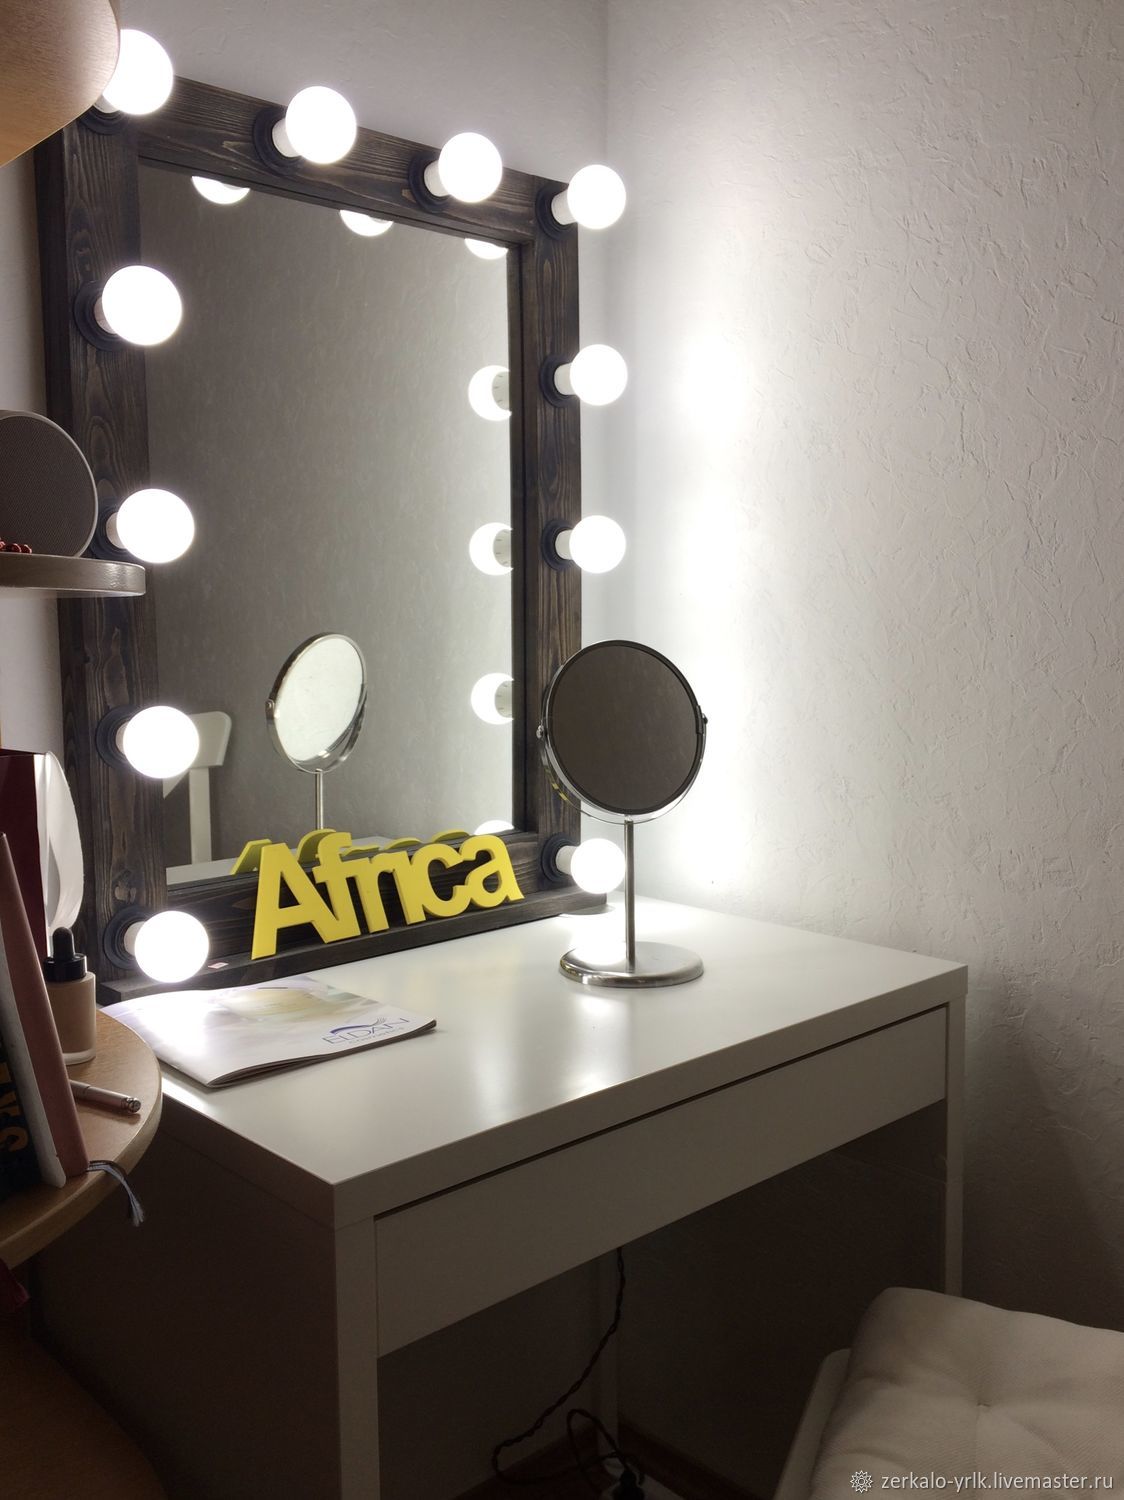 Икеа зеркало с лампочками для макияжа